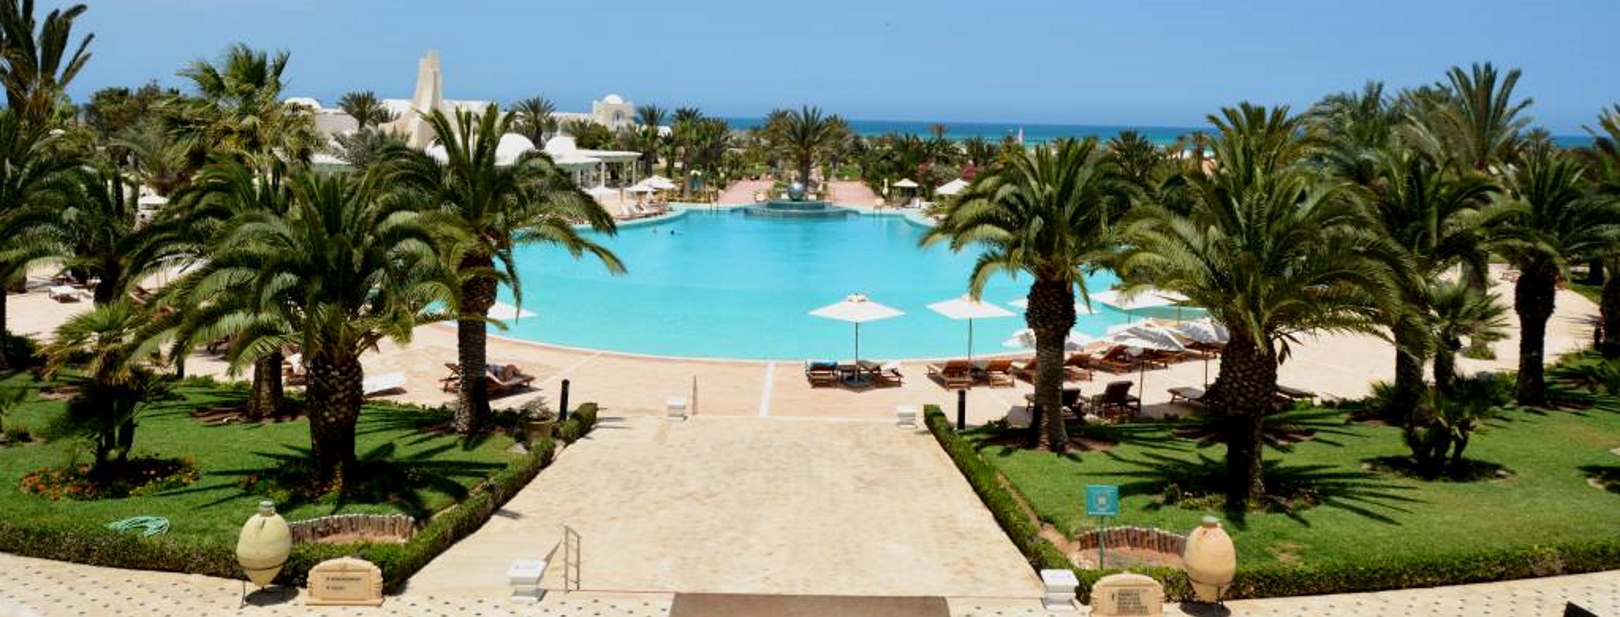 Tunisie - Djerba - Hôtel Royal Garden Palace 5* - Bagage inclus